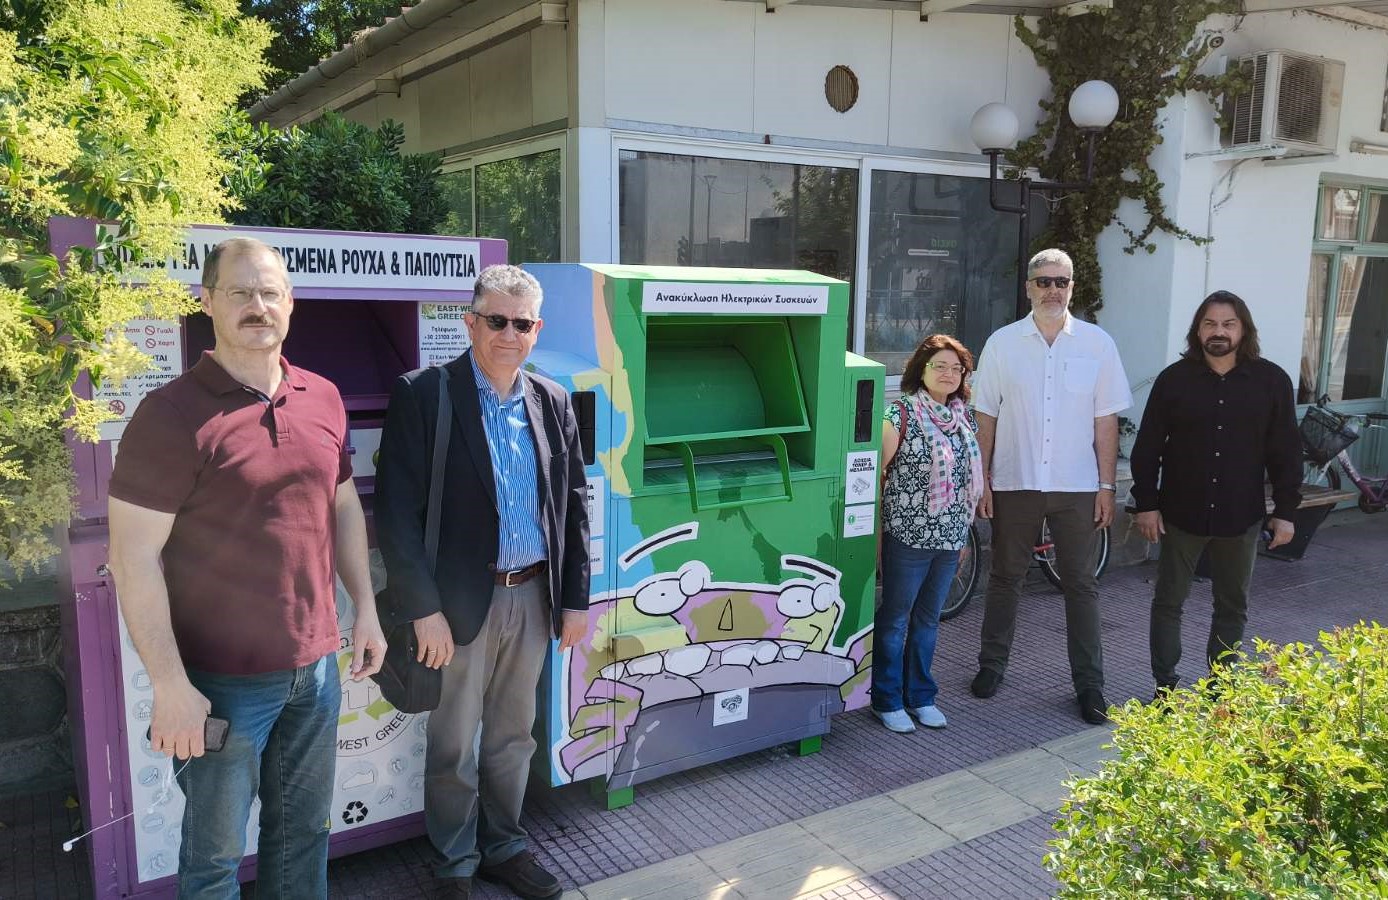 Λάρισα: Νέο σημείο ανακύκλωσης μικρών ηλεκτρικών και ηλεκτρονικών συσκευών στη Γιάννουλη